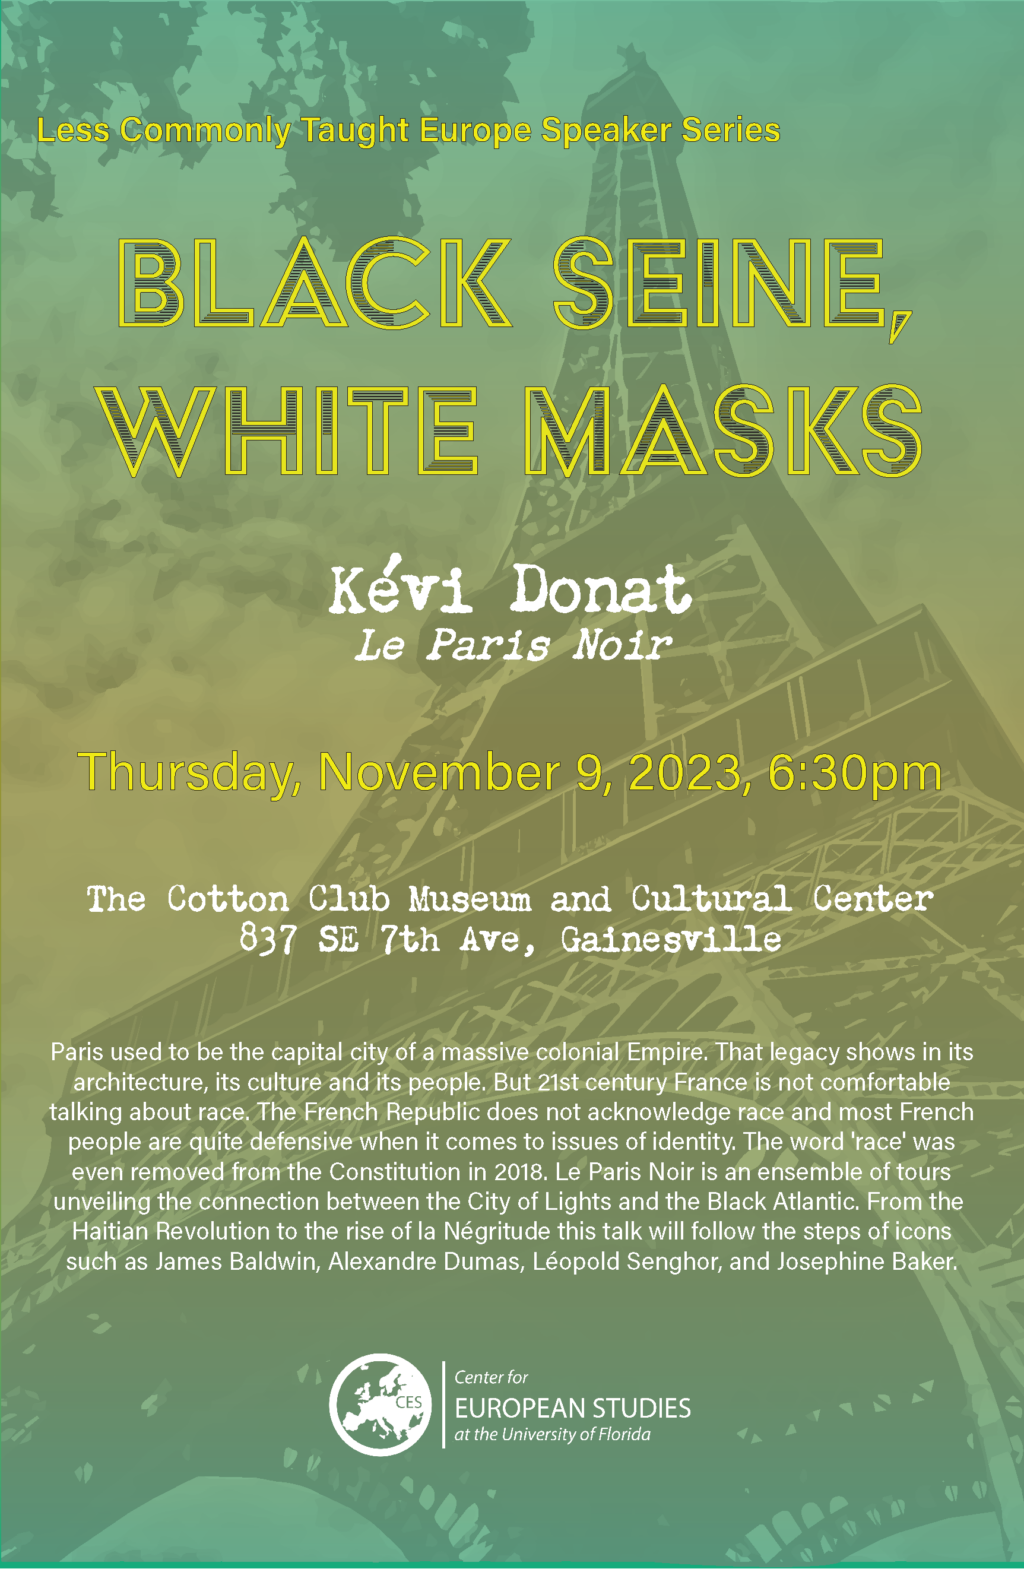 Event poster for Black Seine White Masks